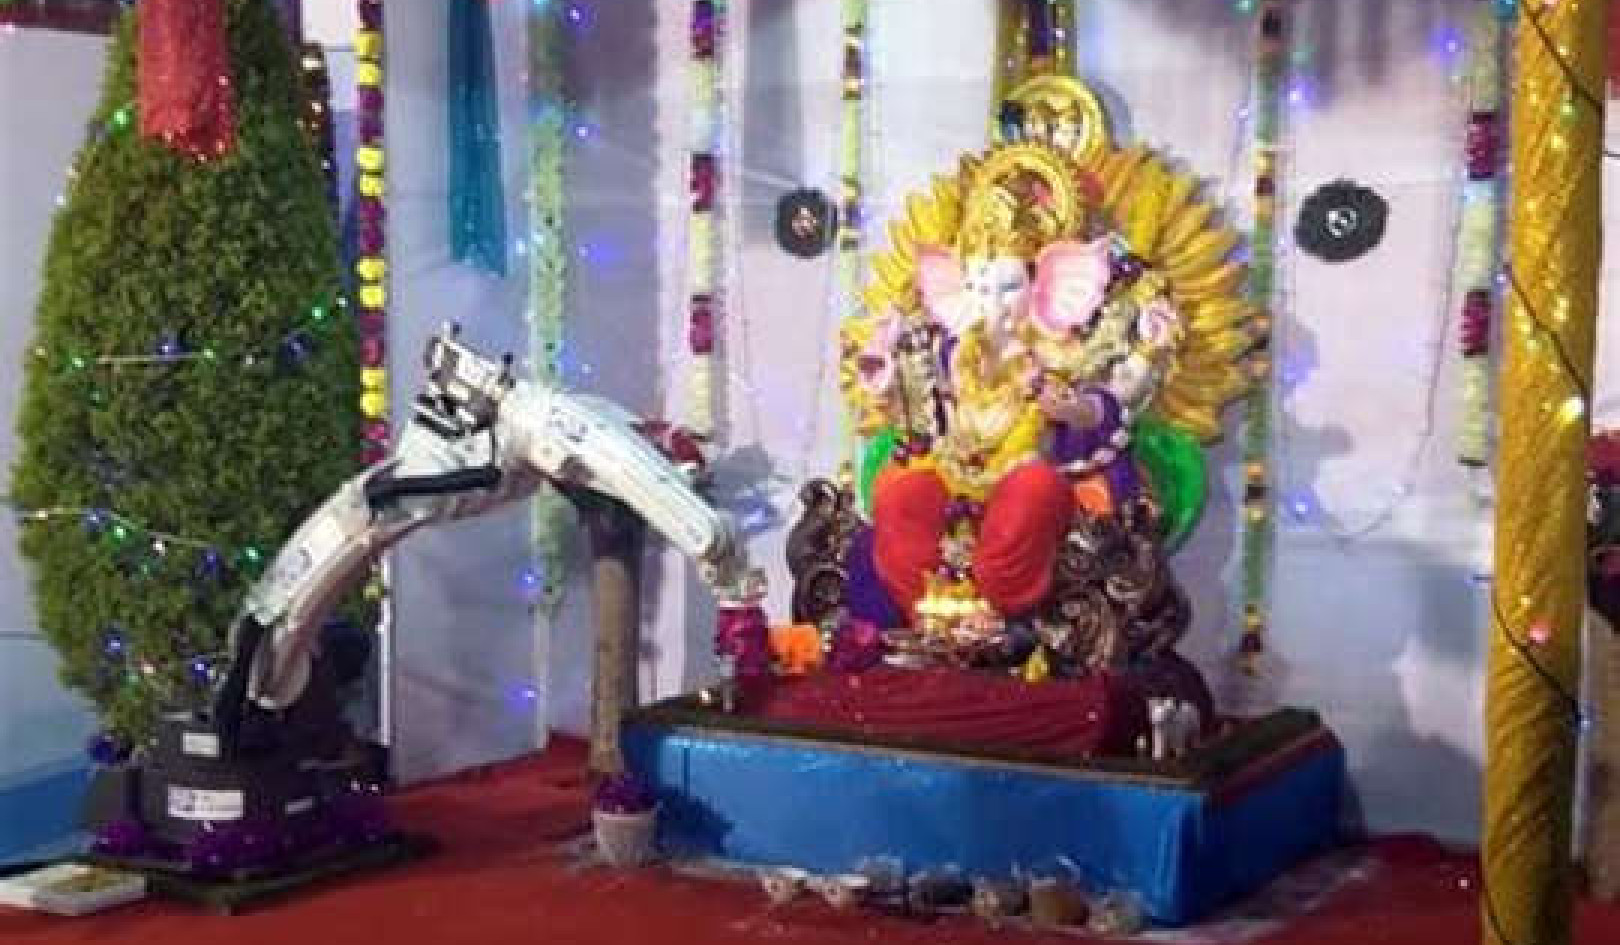 Robotlar Hindu Ritüellerini Gerçekleştiriyor ve Tapanların Yerini mi Alıyorlar?